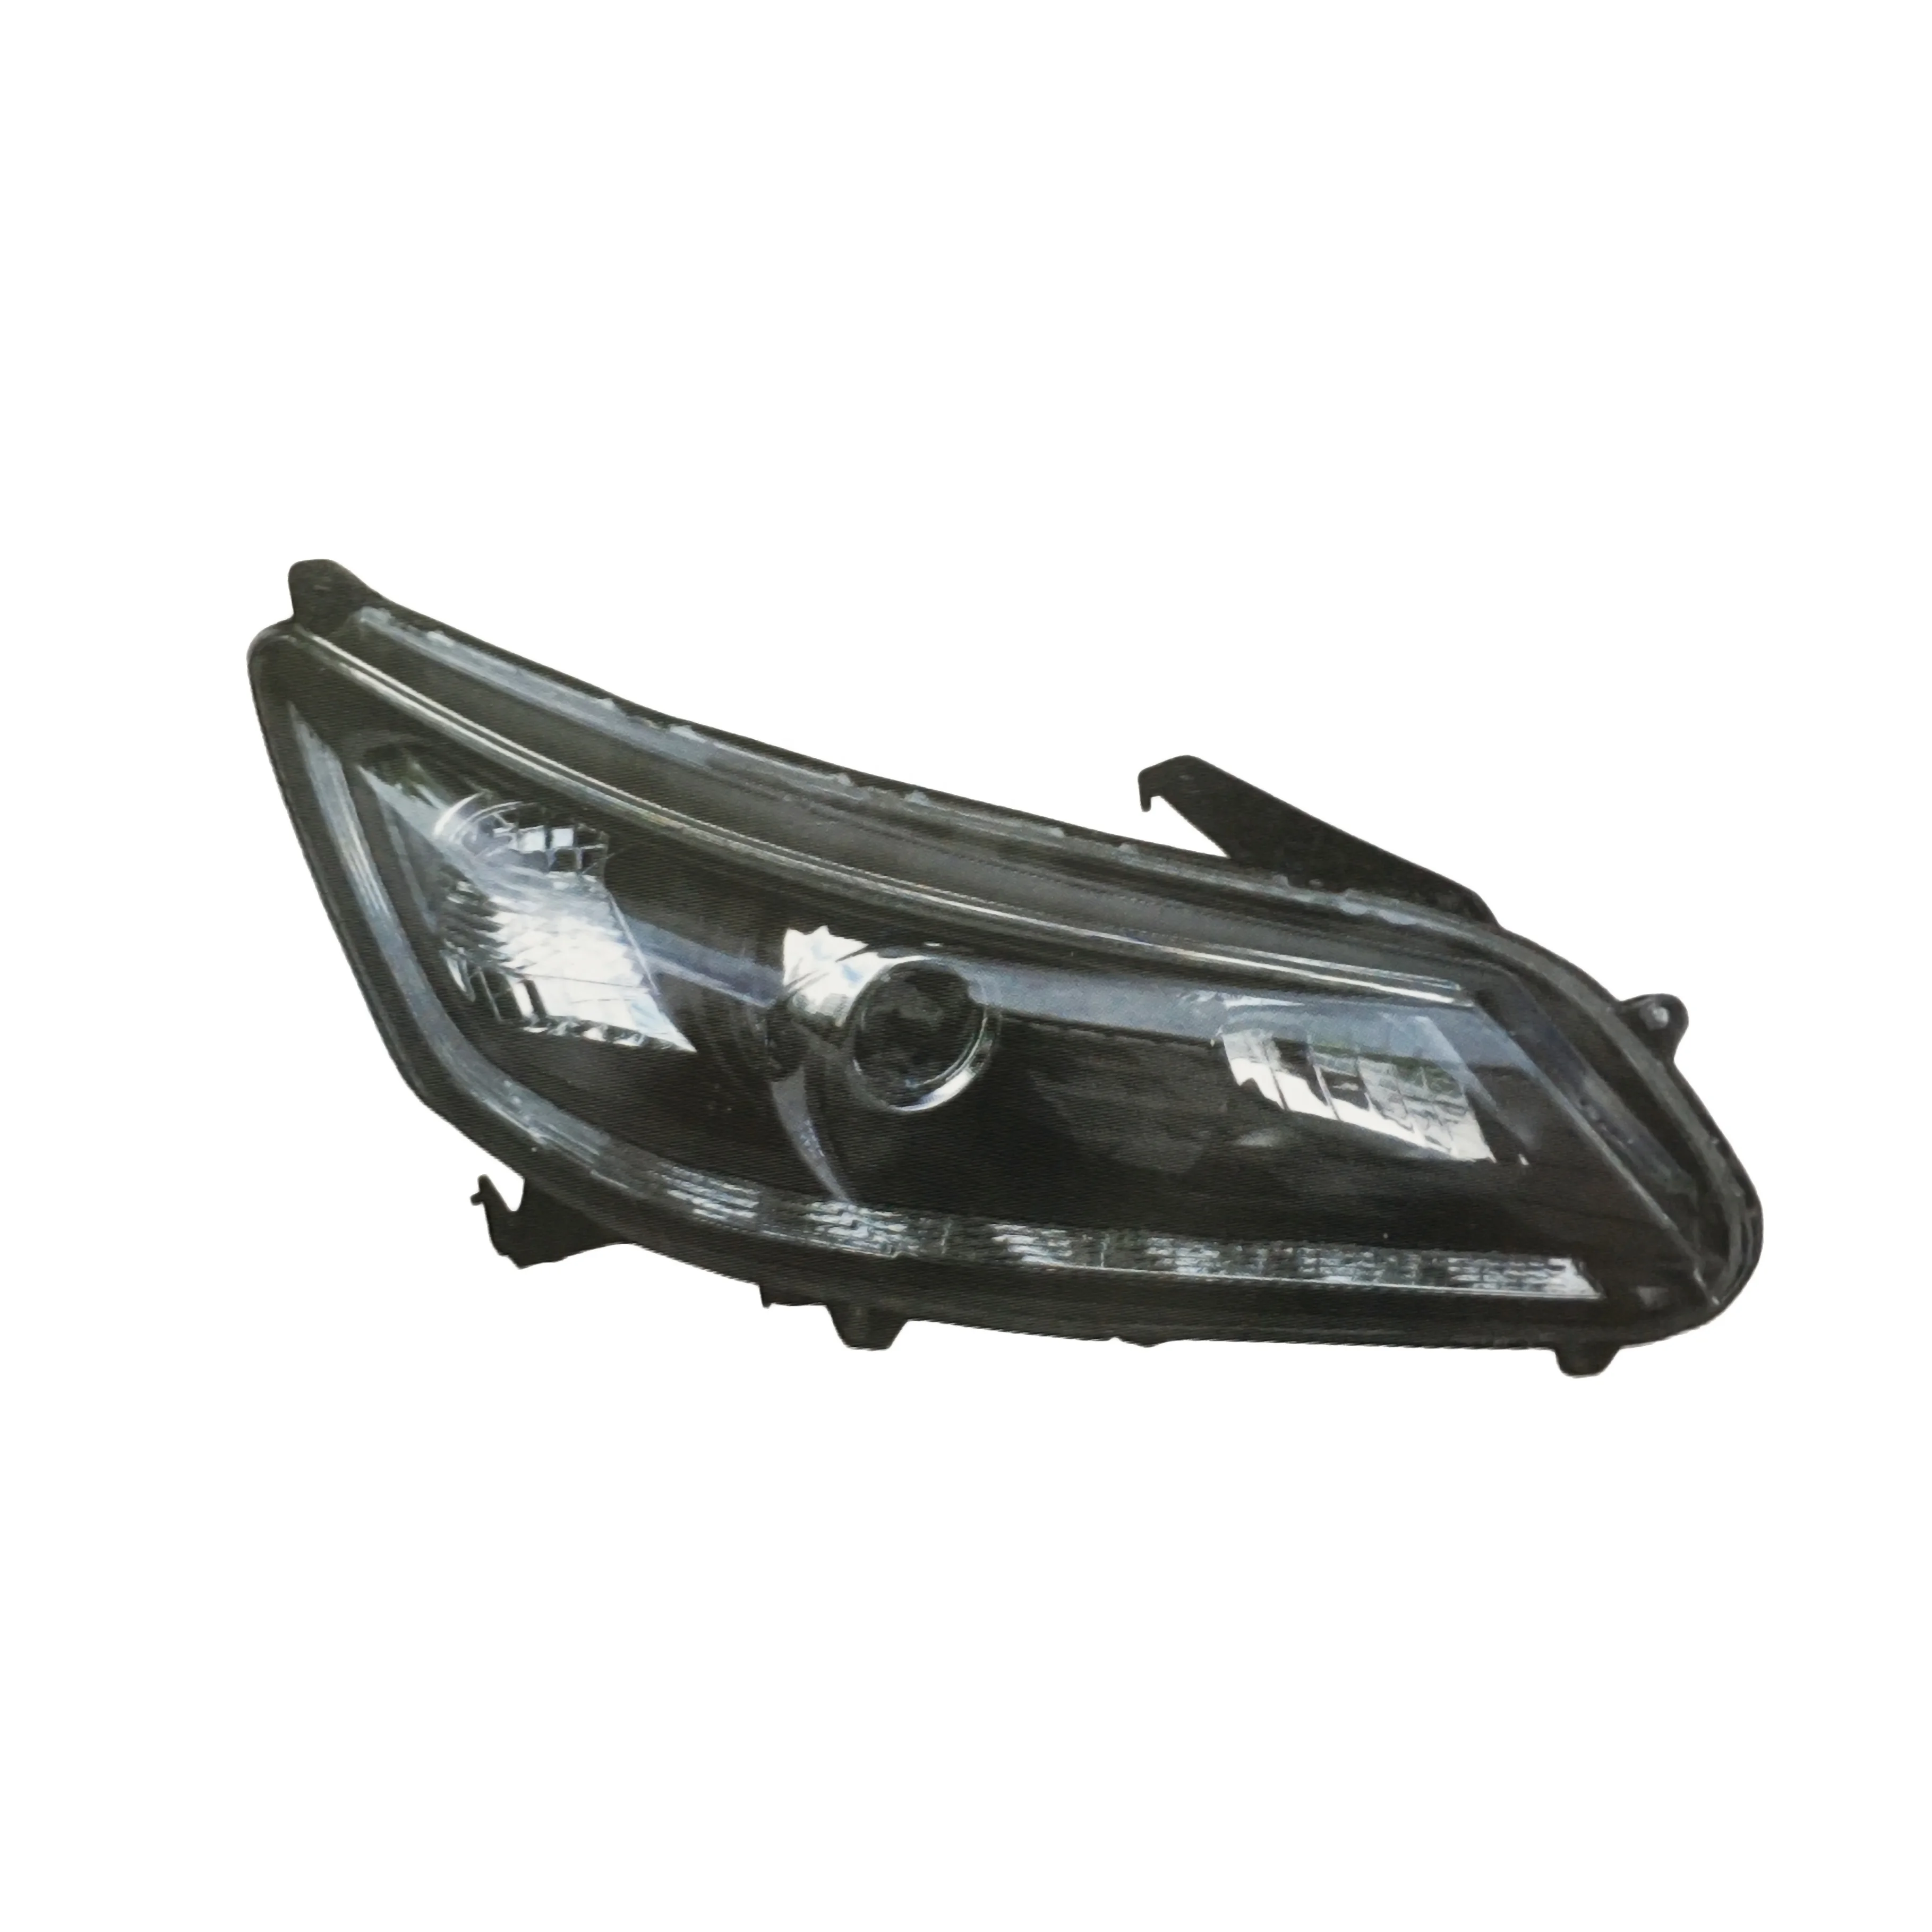 Headlight Headlamp Head Light Lamp Assembly For Honda Accord 2014-2015 ...